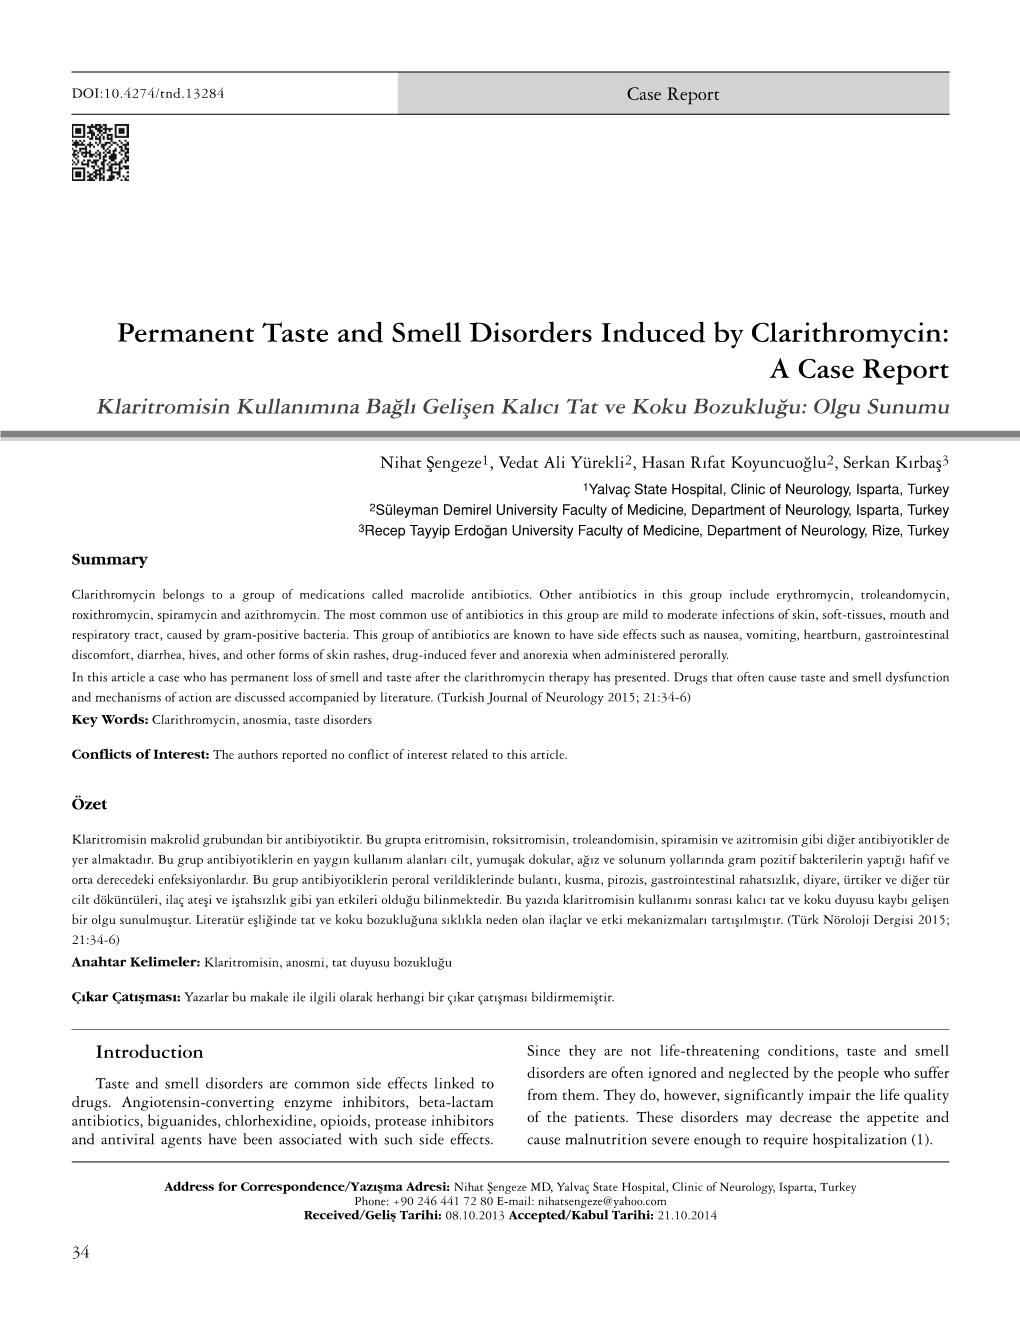 Permanent Taste and Smell Disorders Induced by Clarithromycin: a Case Report Klaritromisin Kullanımına Bağlı Gelişen Kalıcı Tat Ve Koku Bozukluğu: Olgu Sunumu